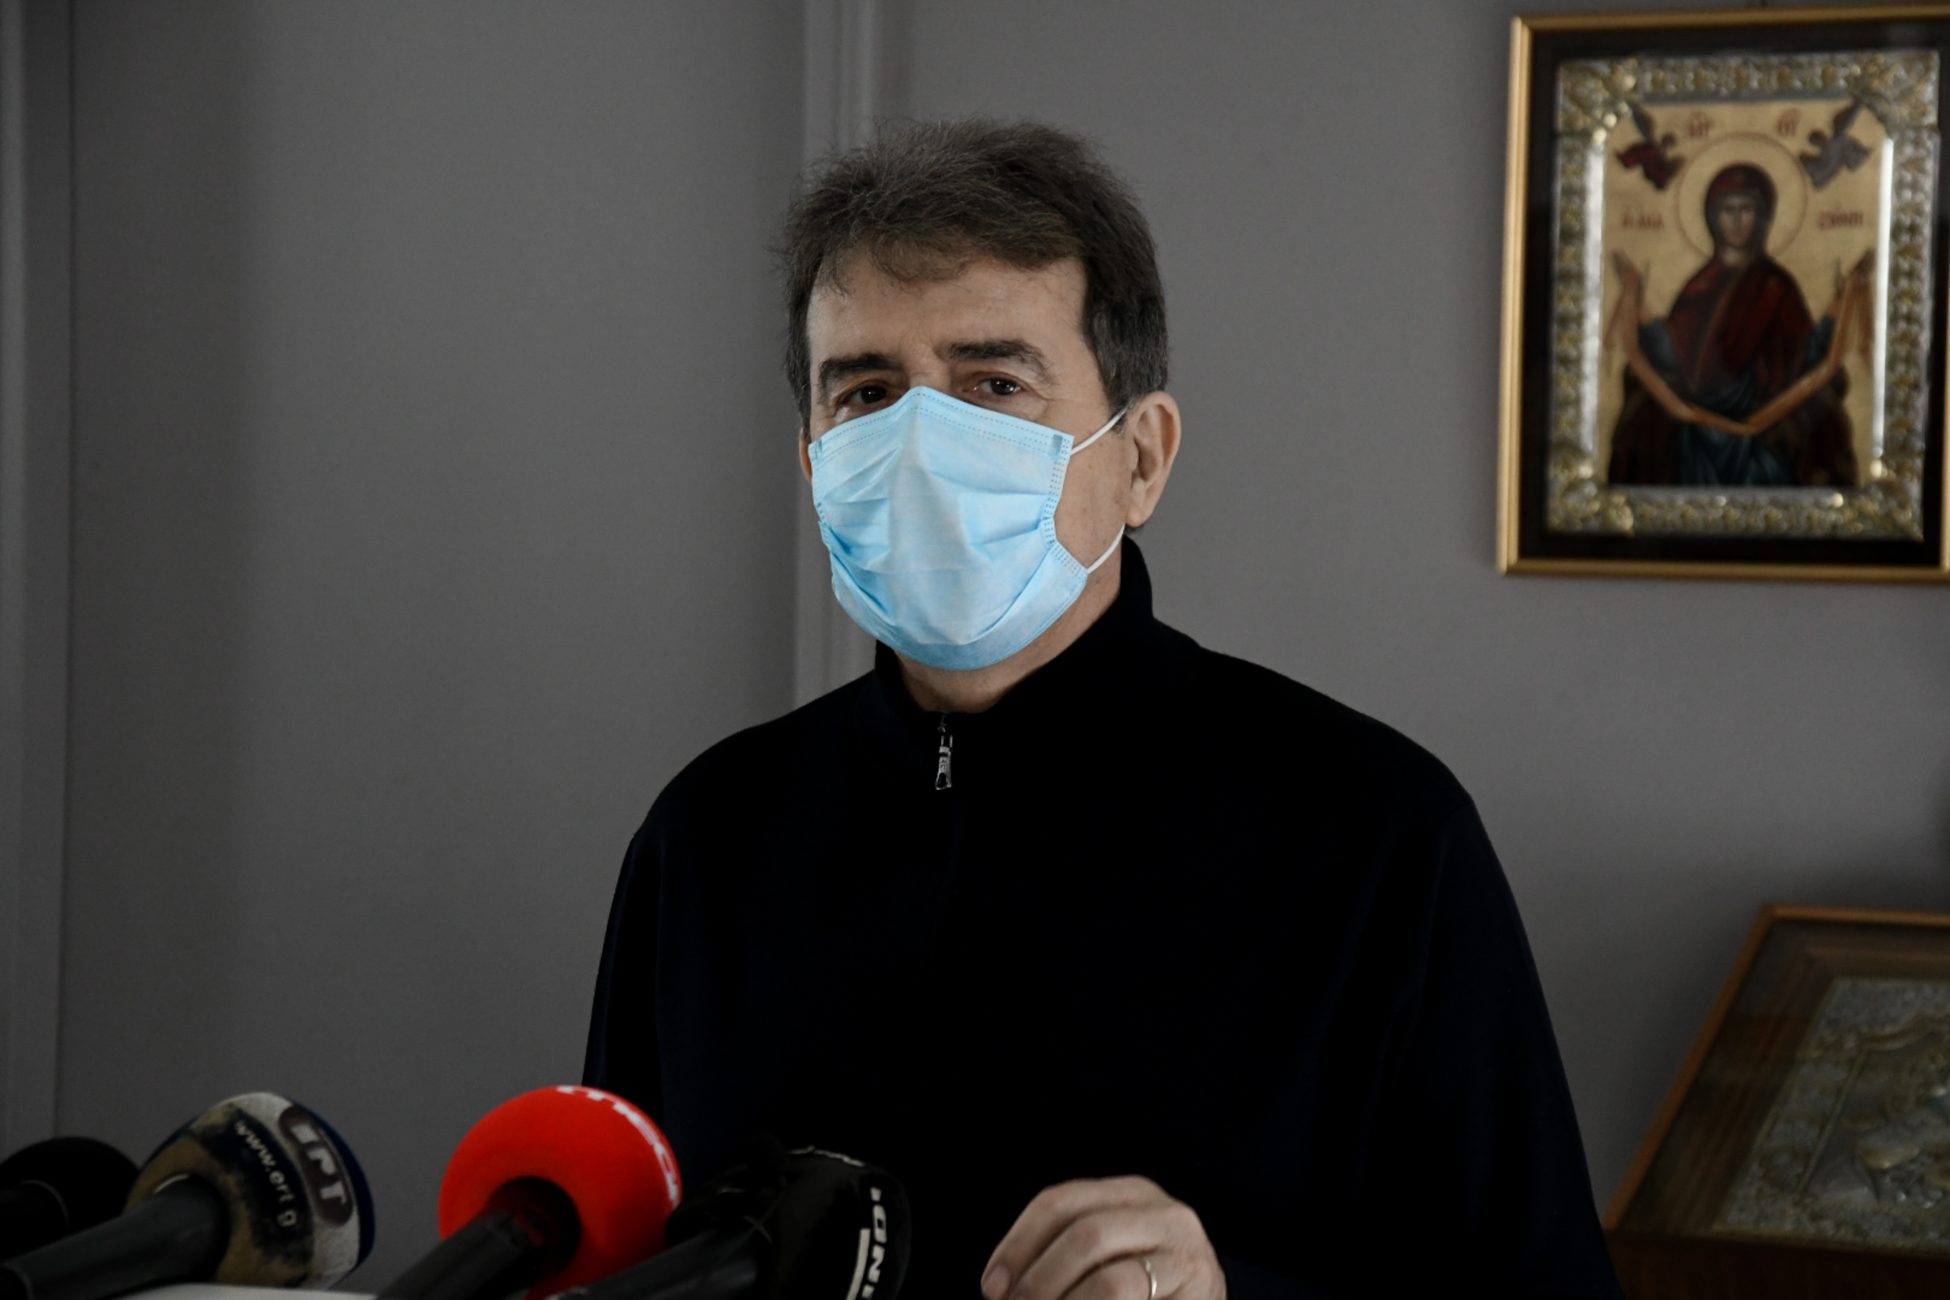 Χρυσοχοΐδης από Πάτρα: Δεν θα διαπραγματευτούμε τη δημόσια υγεία και την ανθρώπινη ζωή (vid)